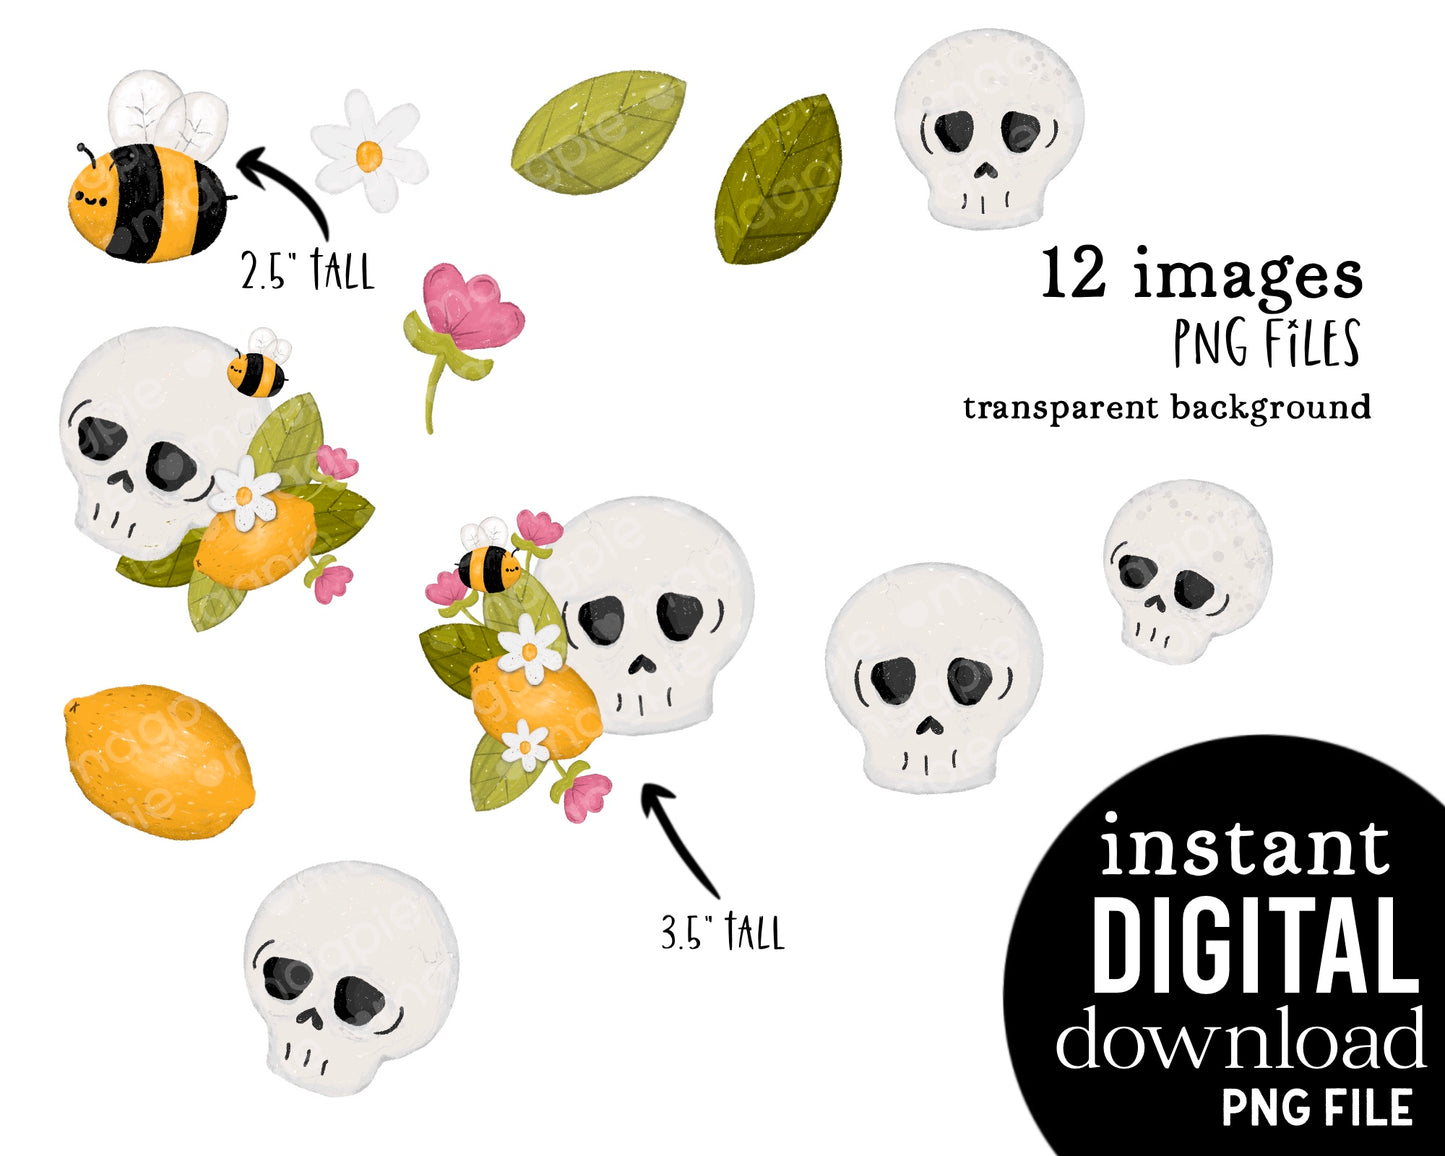 Lemon Skull Cute Flower Clipart Bundle